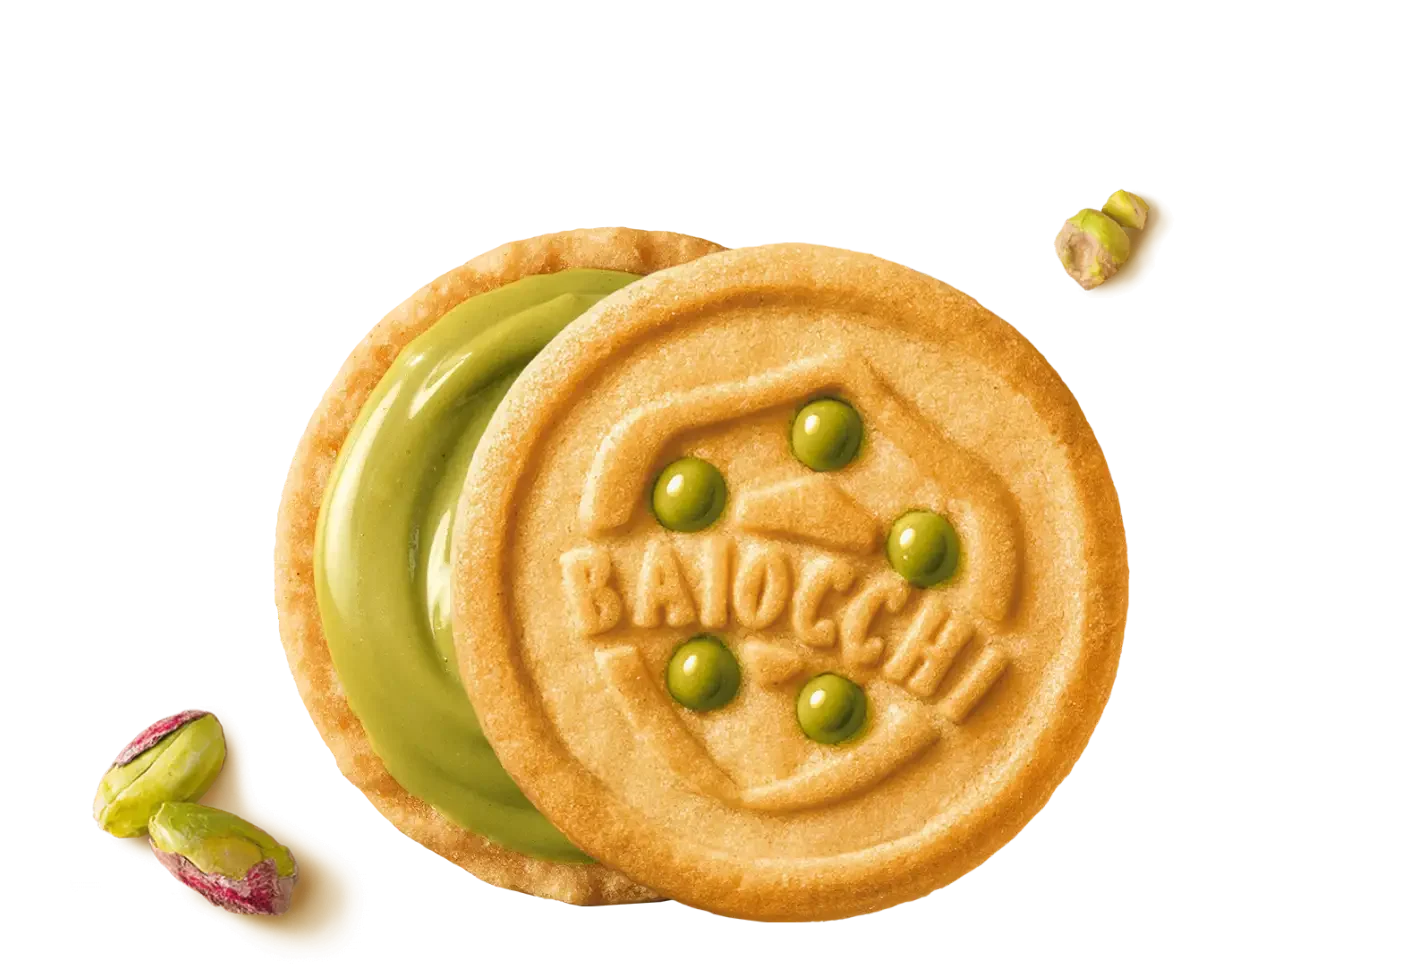 Pistachio biscuit